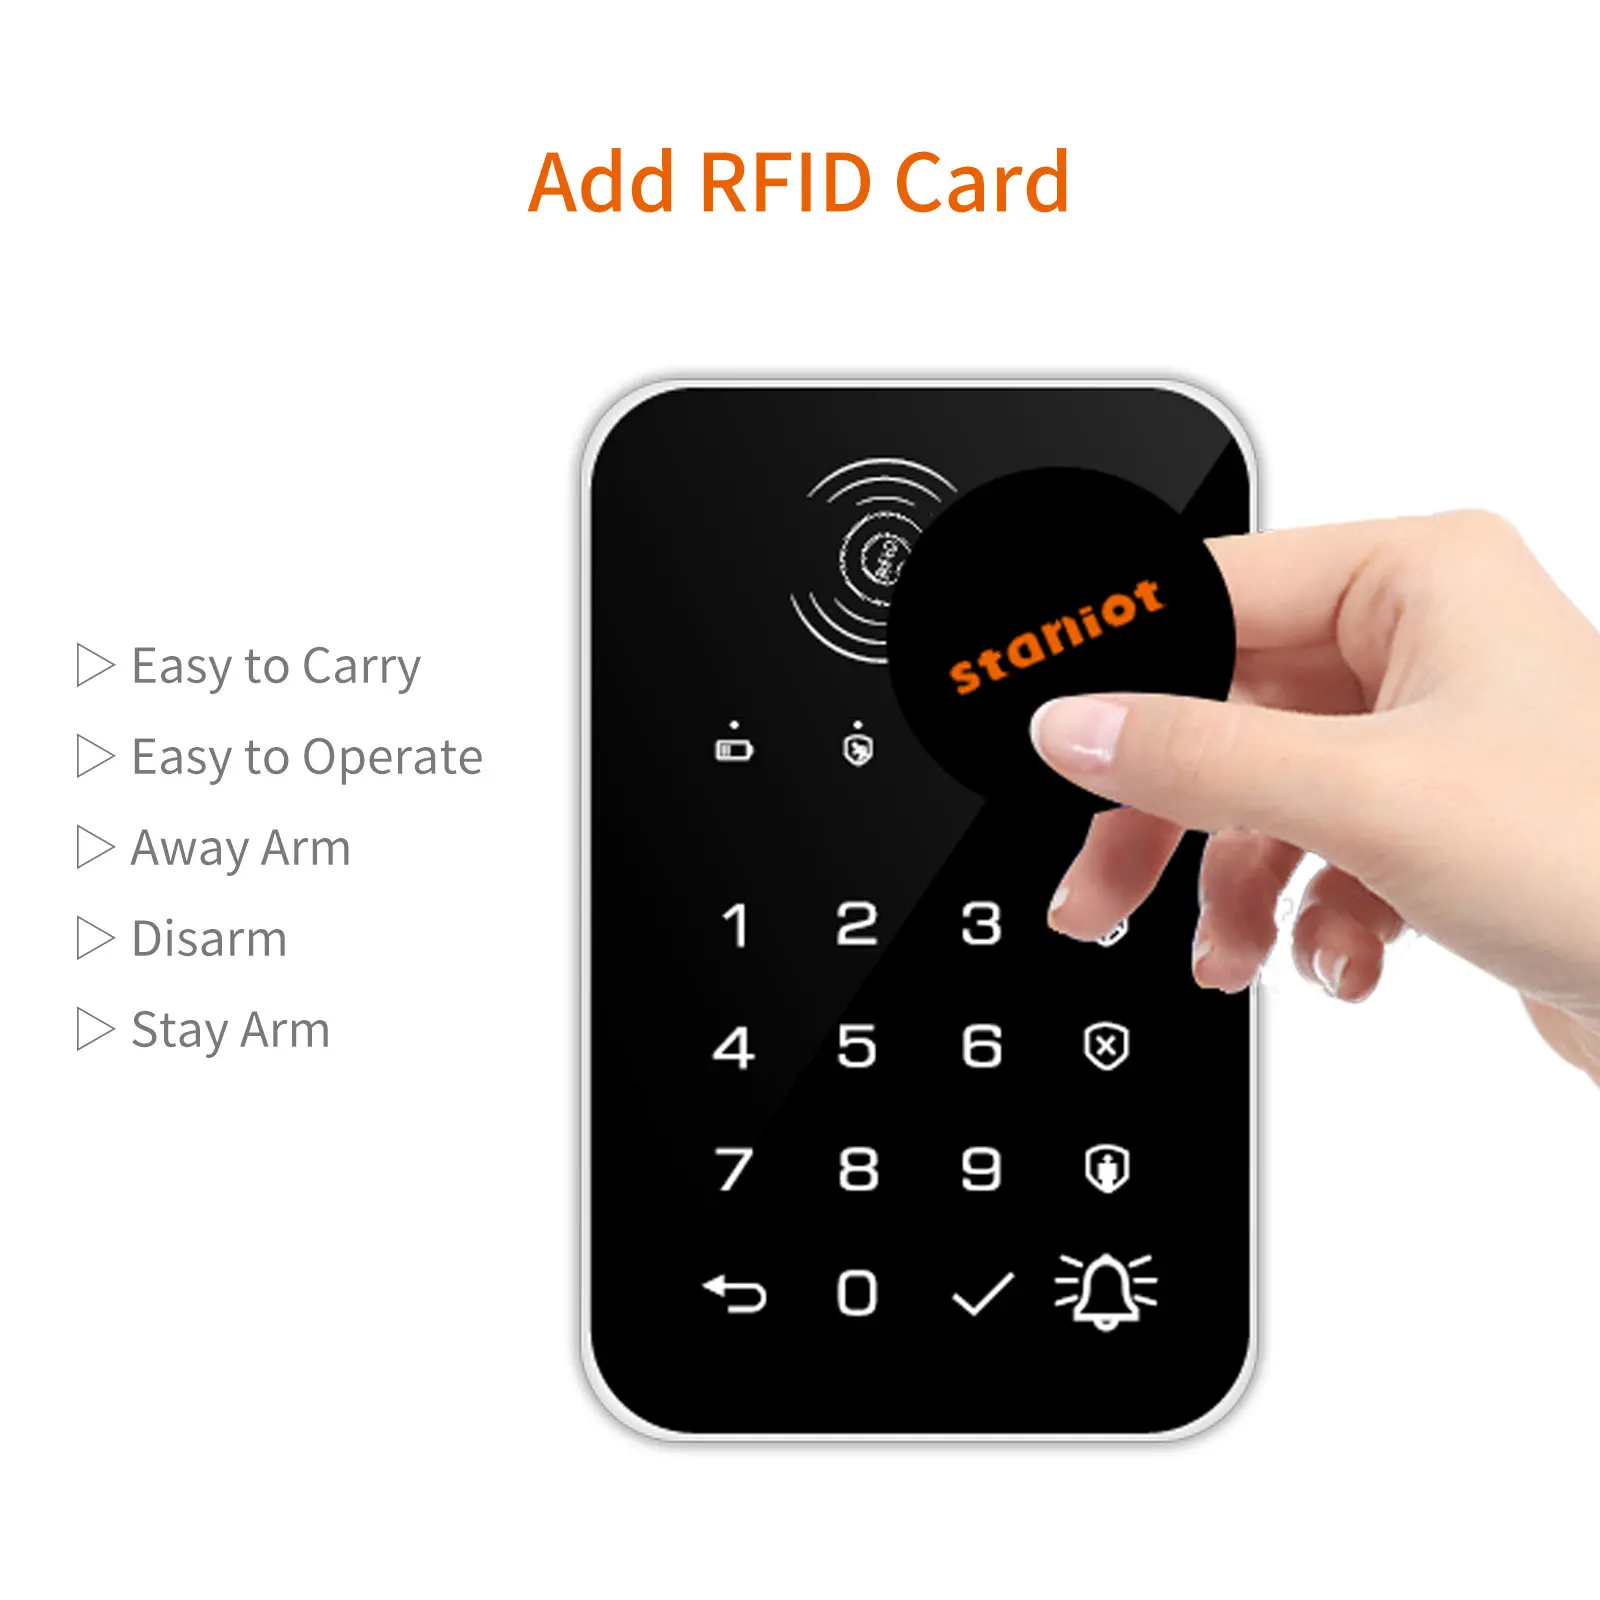 Staniot 433Mhz Drahtlose Touch Tastatur 2Pcs RFID Karte Arm Oder Entwaffnen Passwort Tastatur Für Tuya Smart Home Sicherheit alarm System,Heißer Verkauf in Deutschland, geeignet für 2G/GSM/4G Anti-Diebstahl-Host